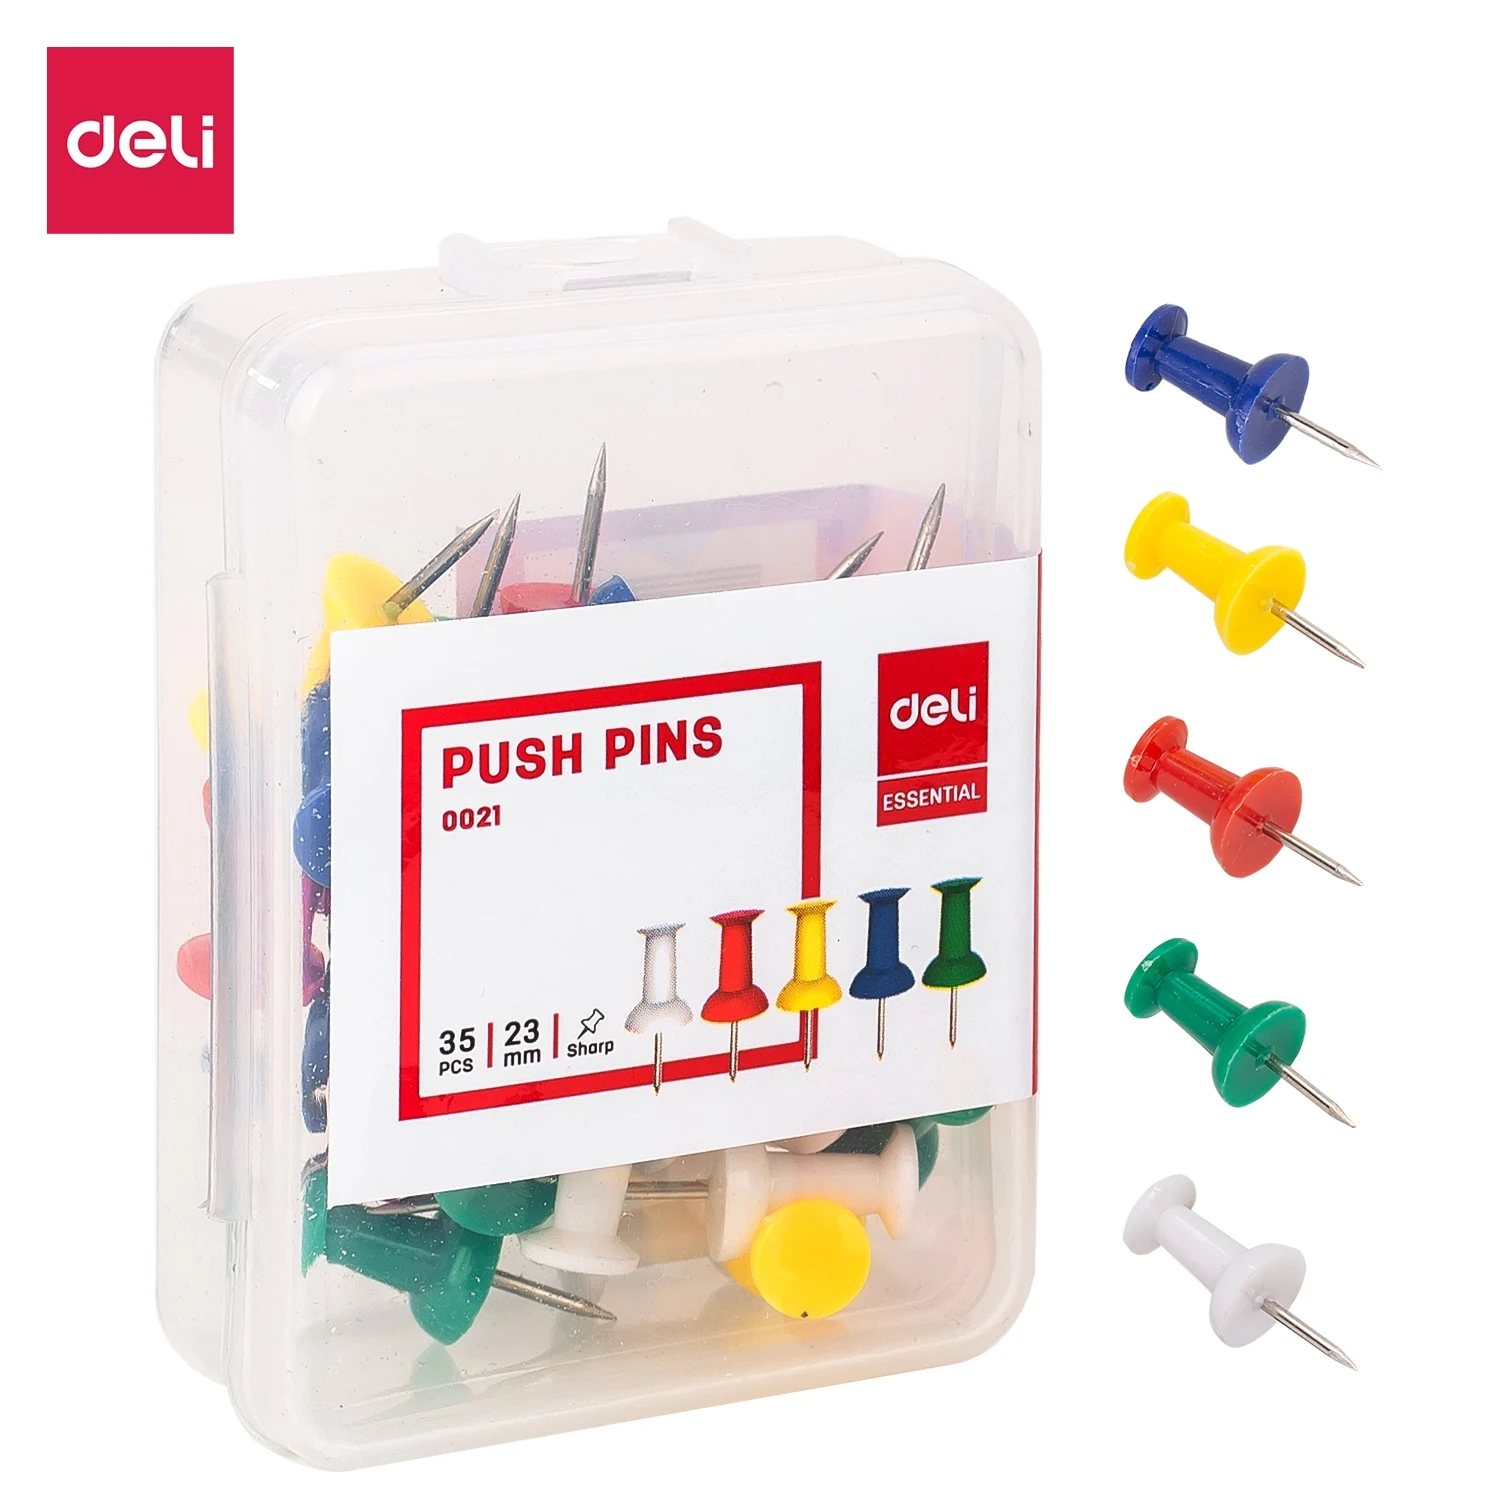 

Deli E0021 Colored Push Pins 35PCS/Box Plastic Cork Board Pin Thumbtack Office Supplies School Accessories